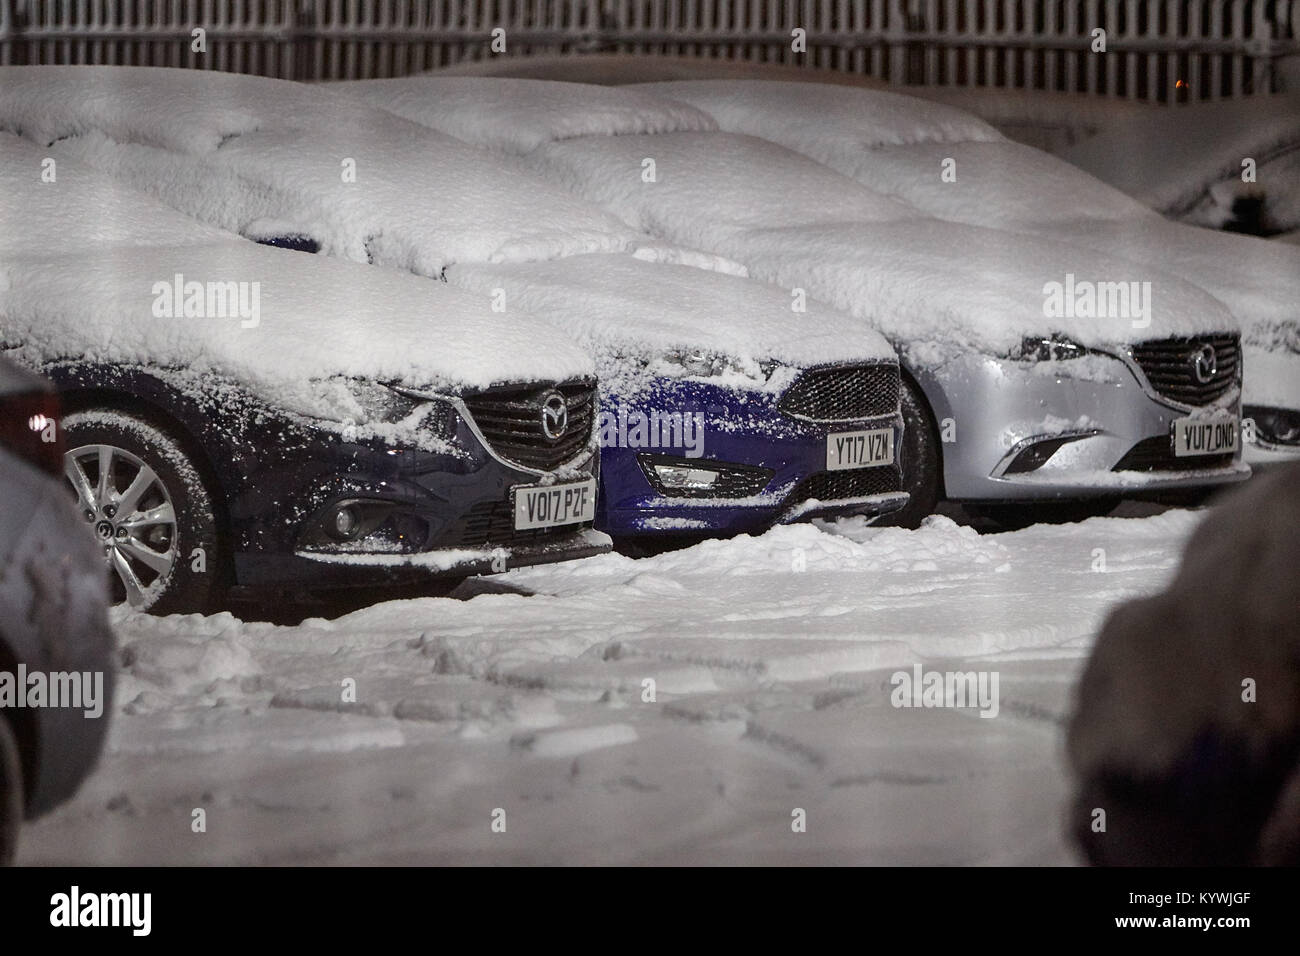 En Newtownabbey, Norte de Irlanda. 16 Jan, 2018. Los coches en un garaje antepatio nevó en ámbar de advertencia climáticas como fuertes nevadas comienza a cubrir Newtownabbey fuera de Belfast, Irlanda del Norte, 16 de enero de 2018. Crédito: Radharc Images/Alamy Live News Foto de stock